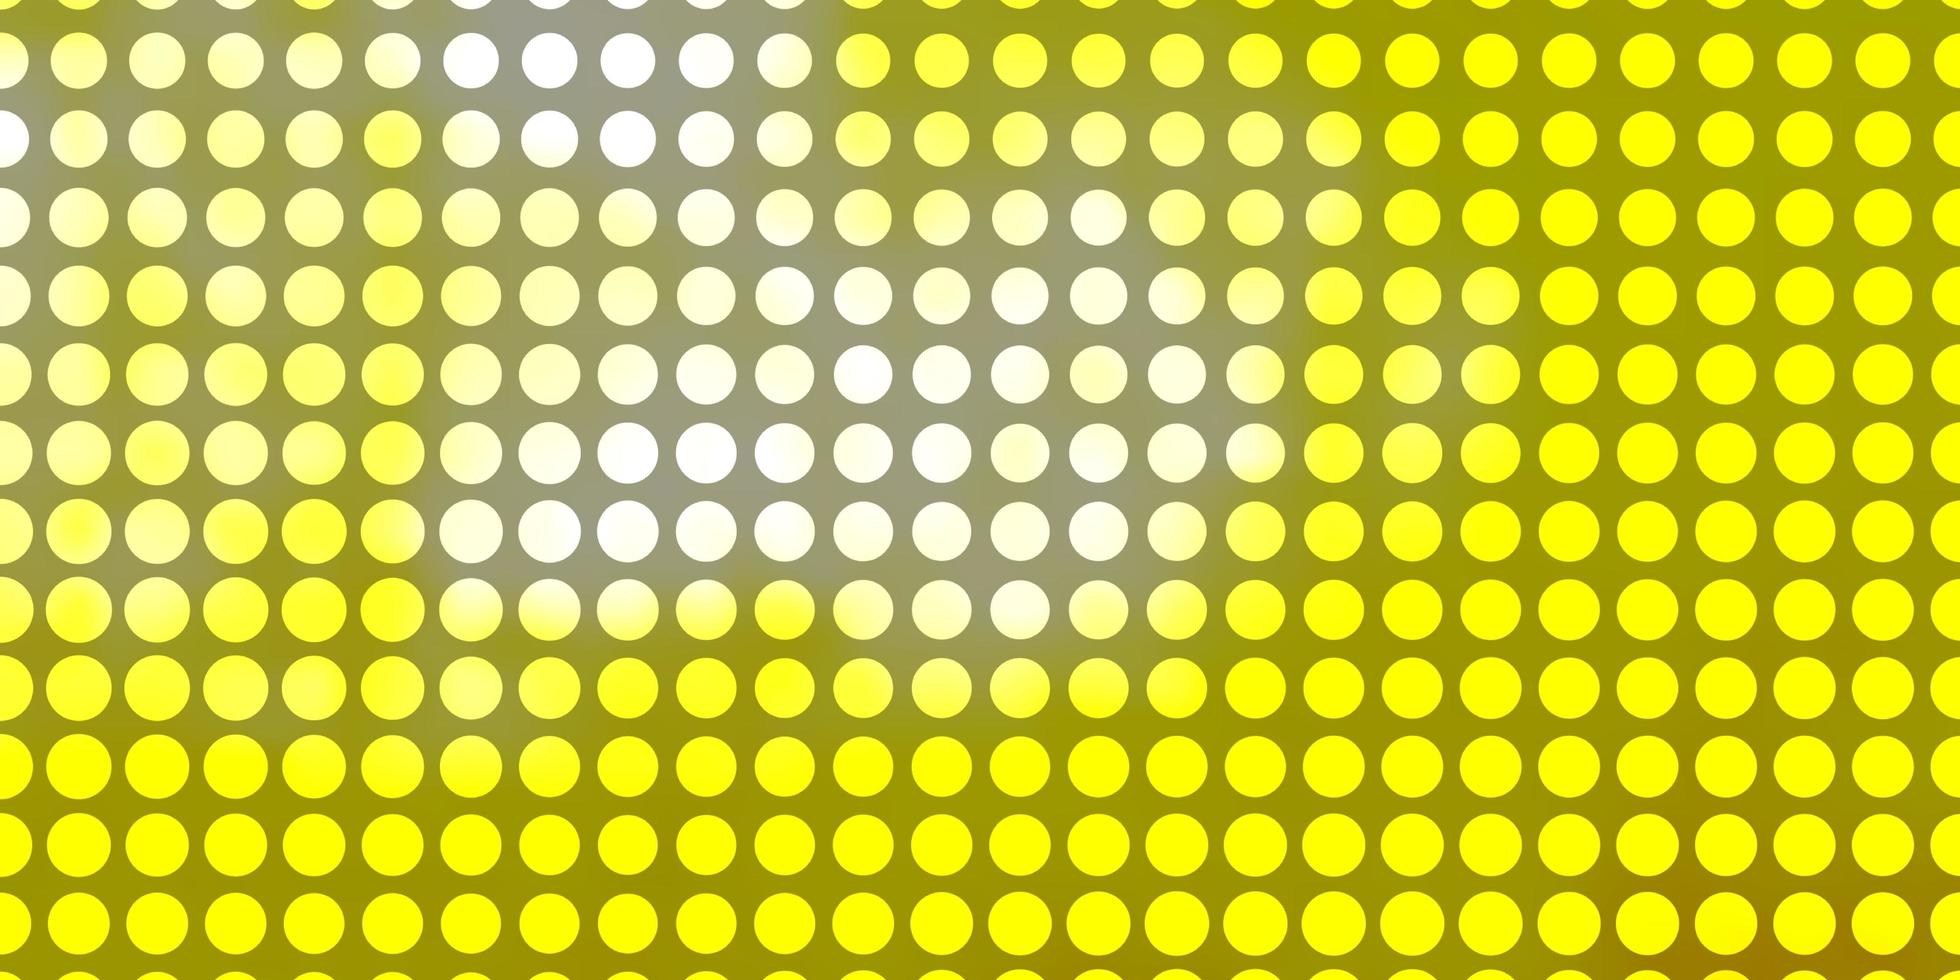 padrão de vetor amarelo claro com círculos. ilustração com conjunto de esferas abstratas coloridas brilhantes. design para seus comerciais.